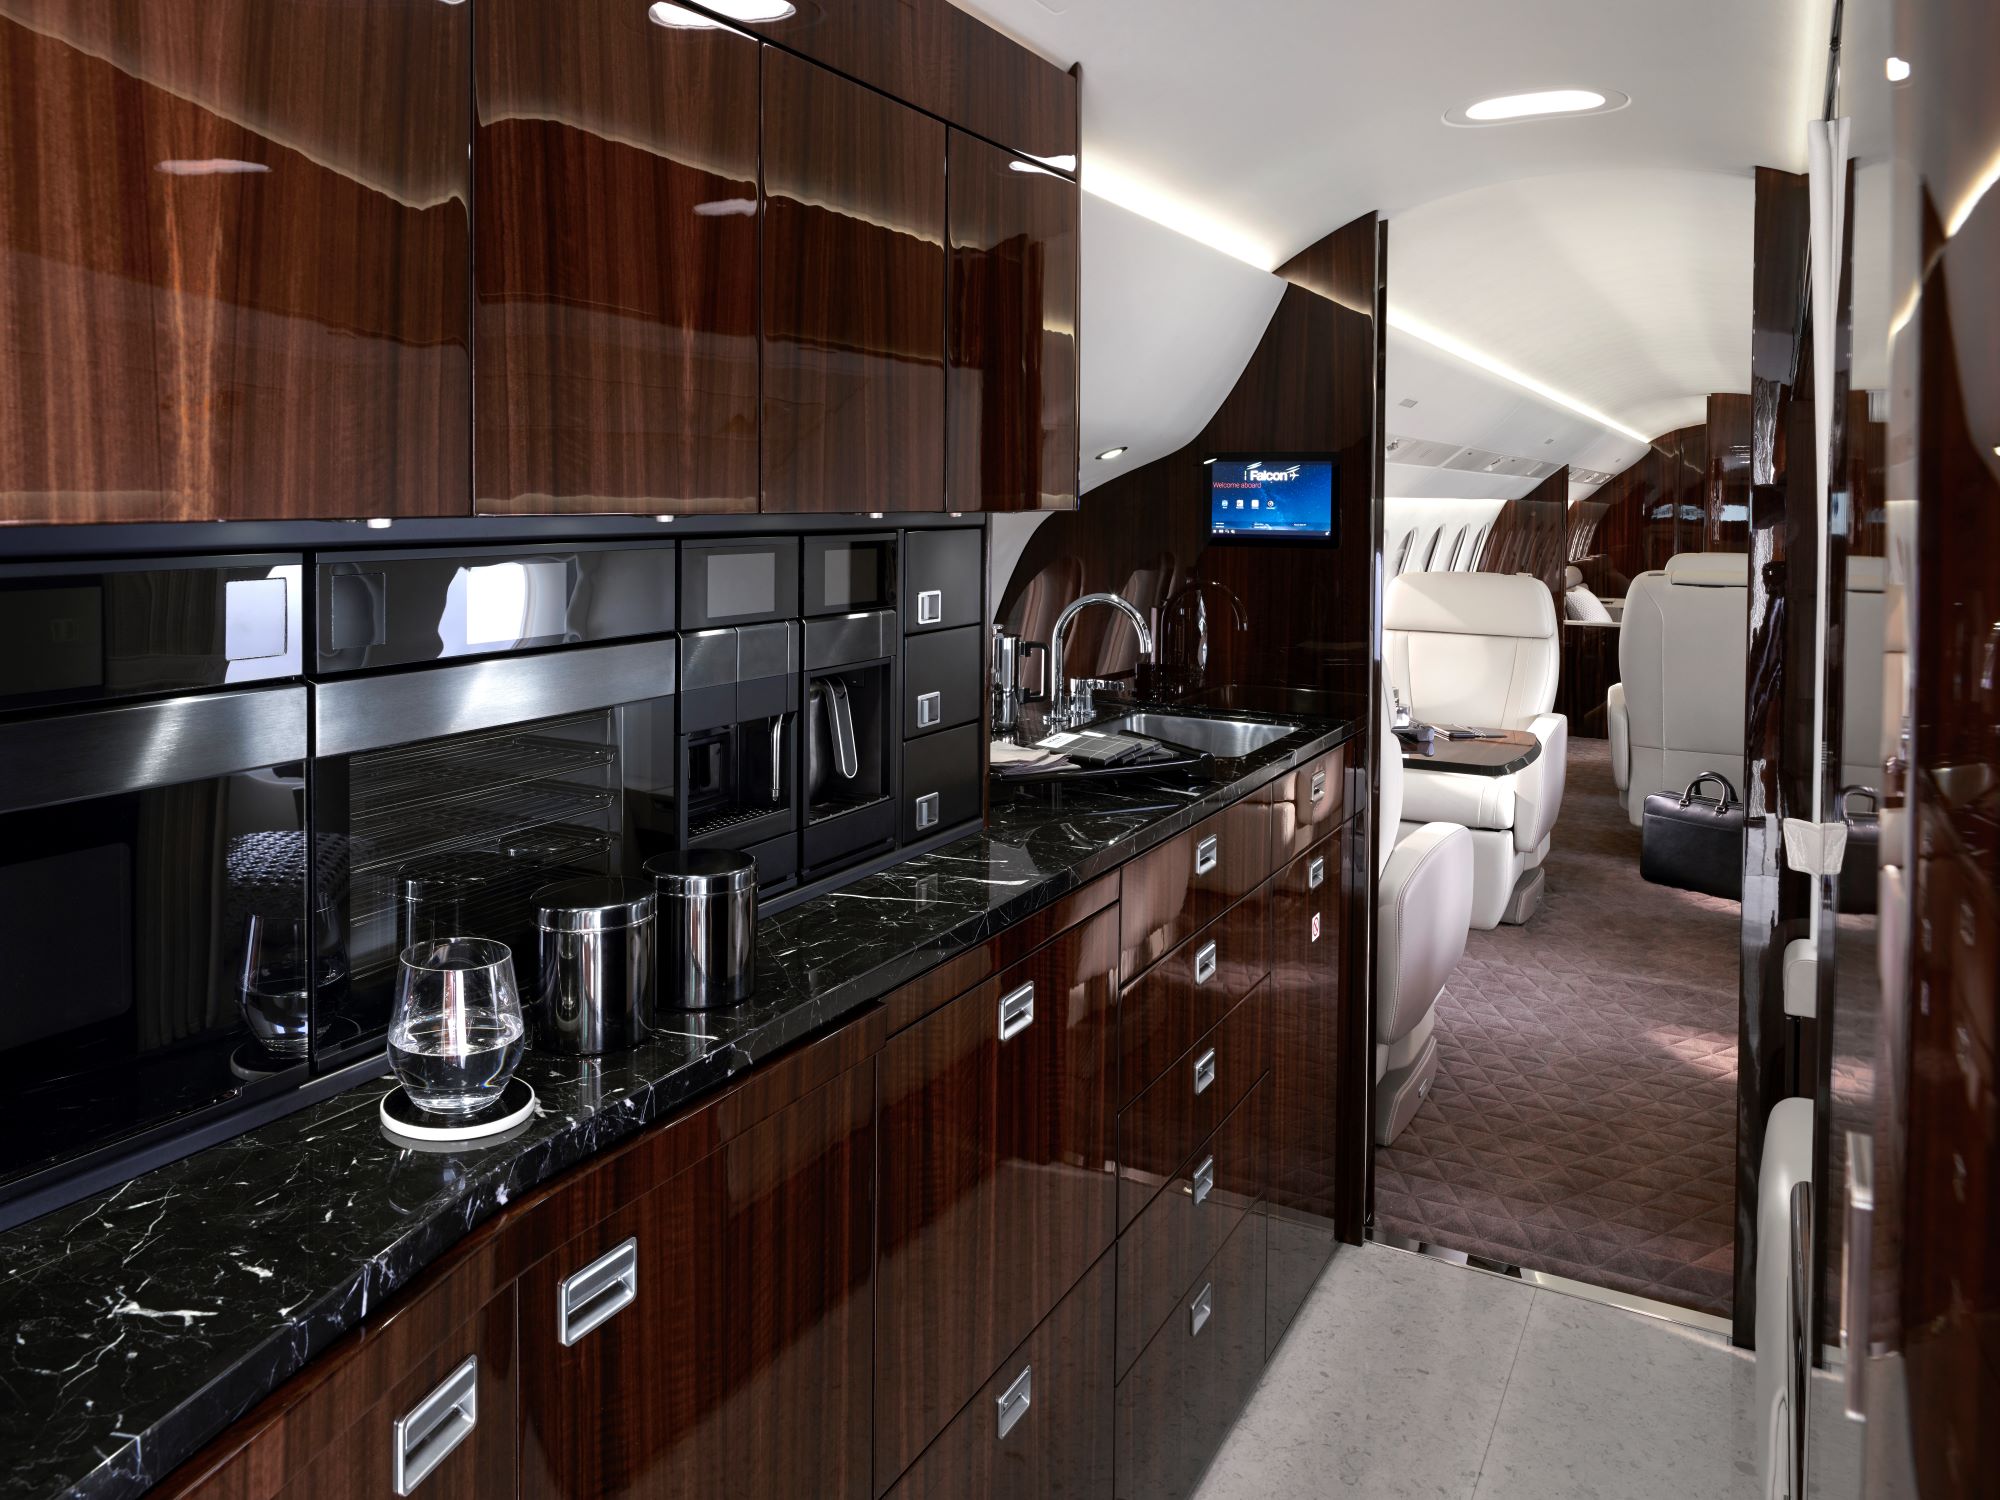 Dassault Falcon 8x kitchen